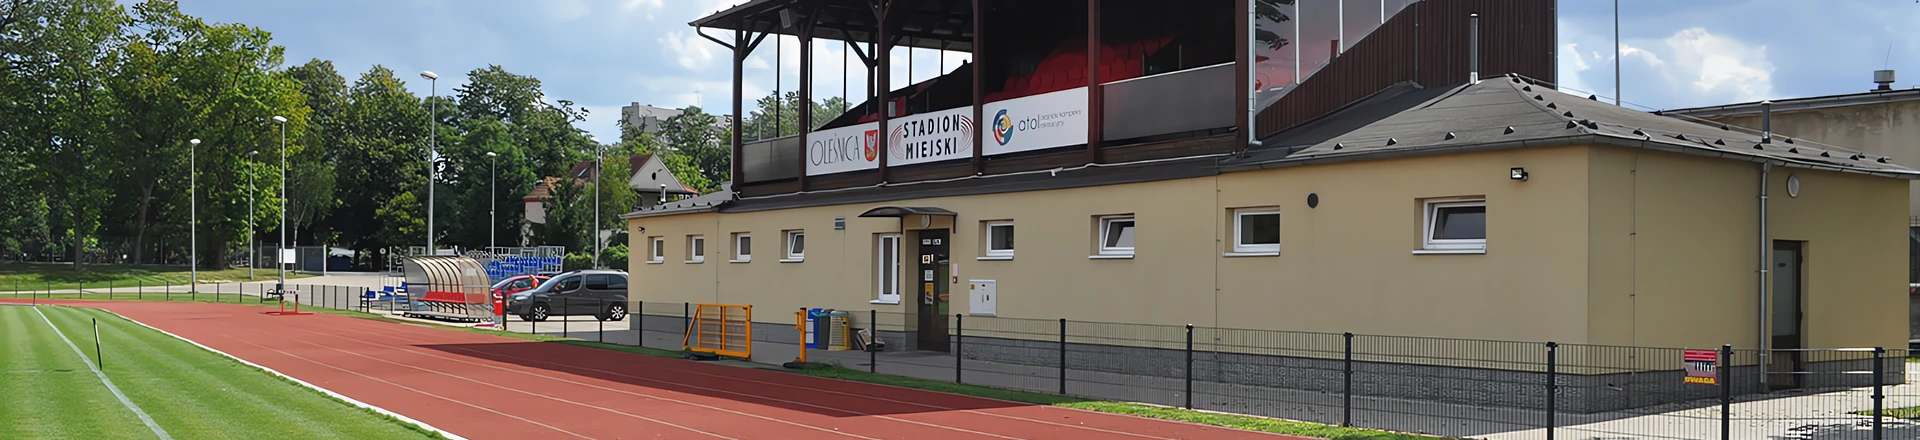 Ciekawe instalacje: System nagłośnienia stadionu w Oleśnicy